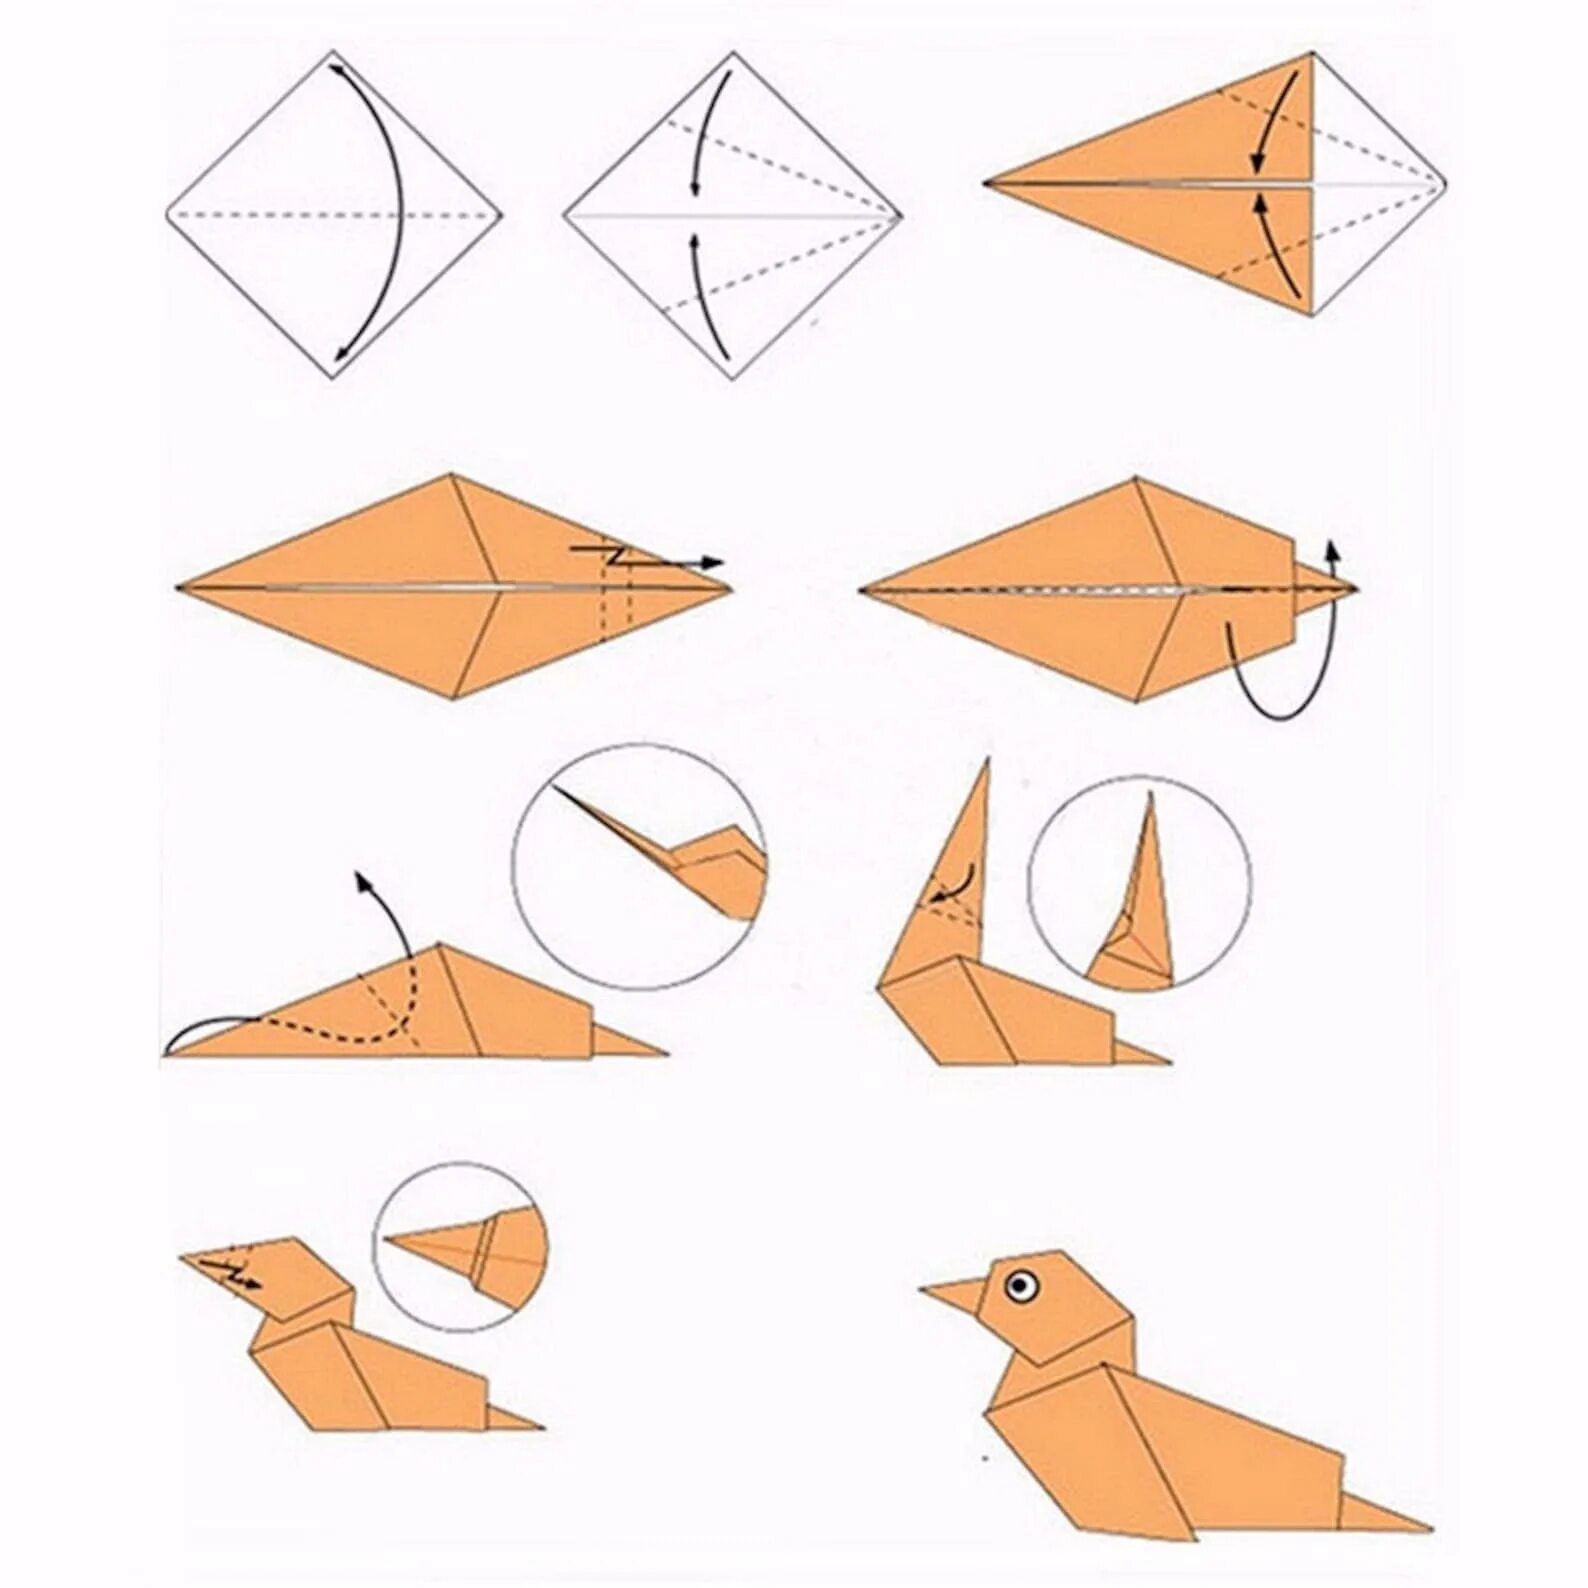 Как собирать оригами. Схема как делать оригами. Как сложить оригами из бумаги для начинающих. Схемы оригами легкие пошагово. Оригами из бумаги для начинающих животные пошагово схемы.